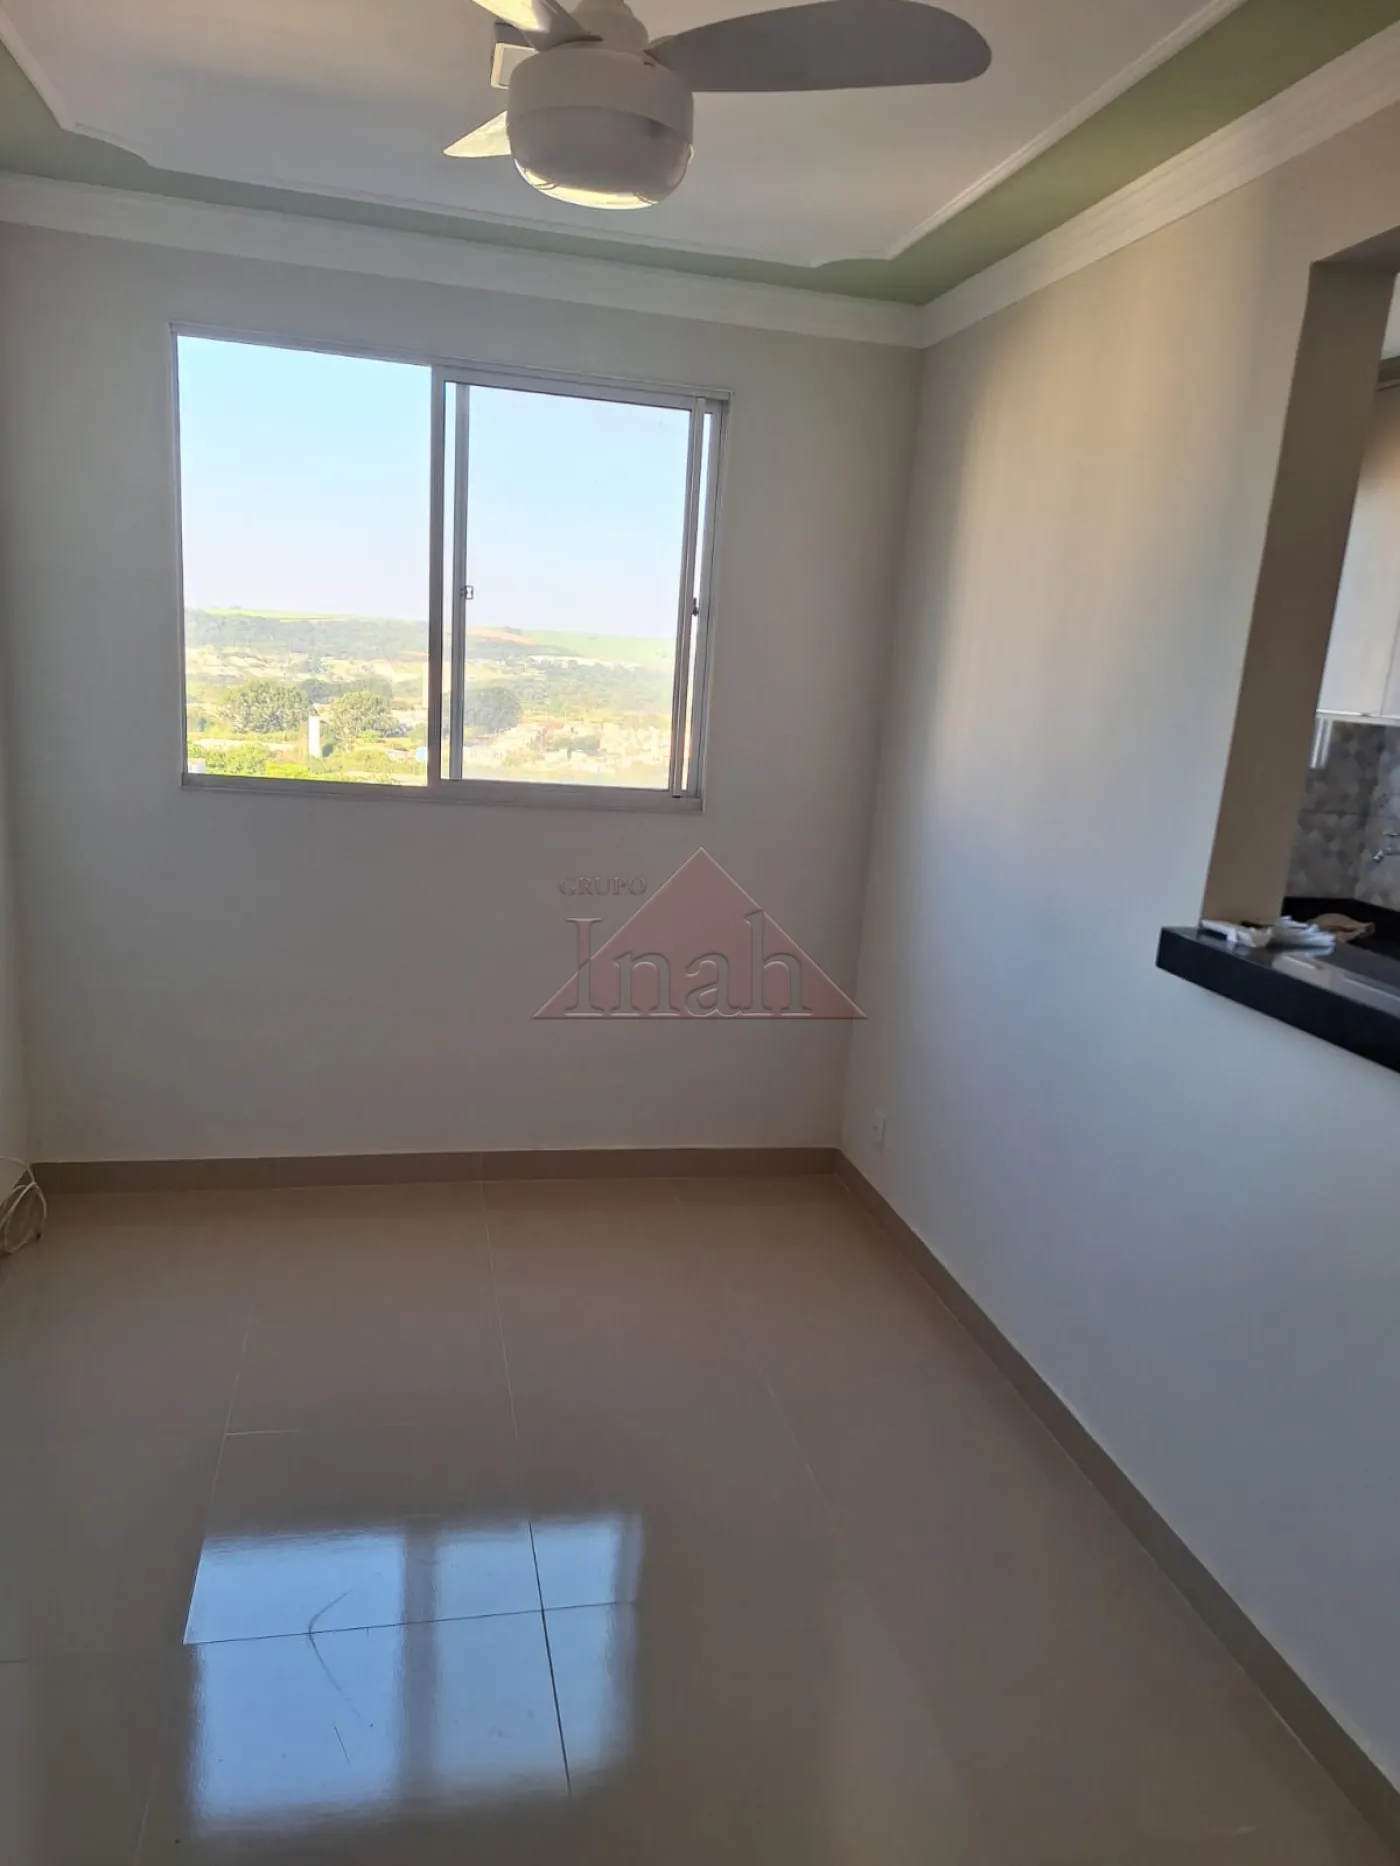 Alugar Apartamentos / Apartamento em Ribeirão Preto R$ 1.800,00 - Foto 2